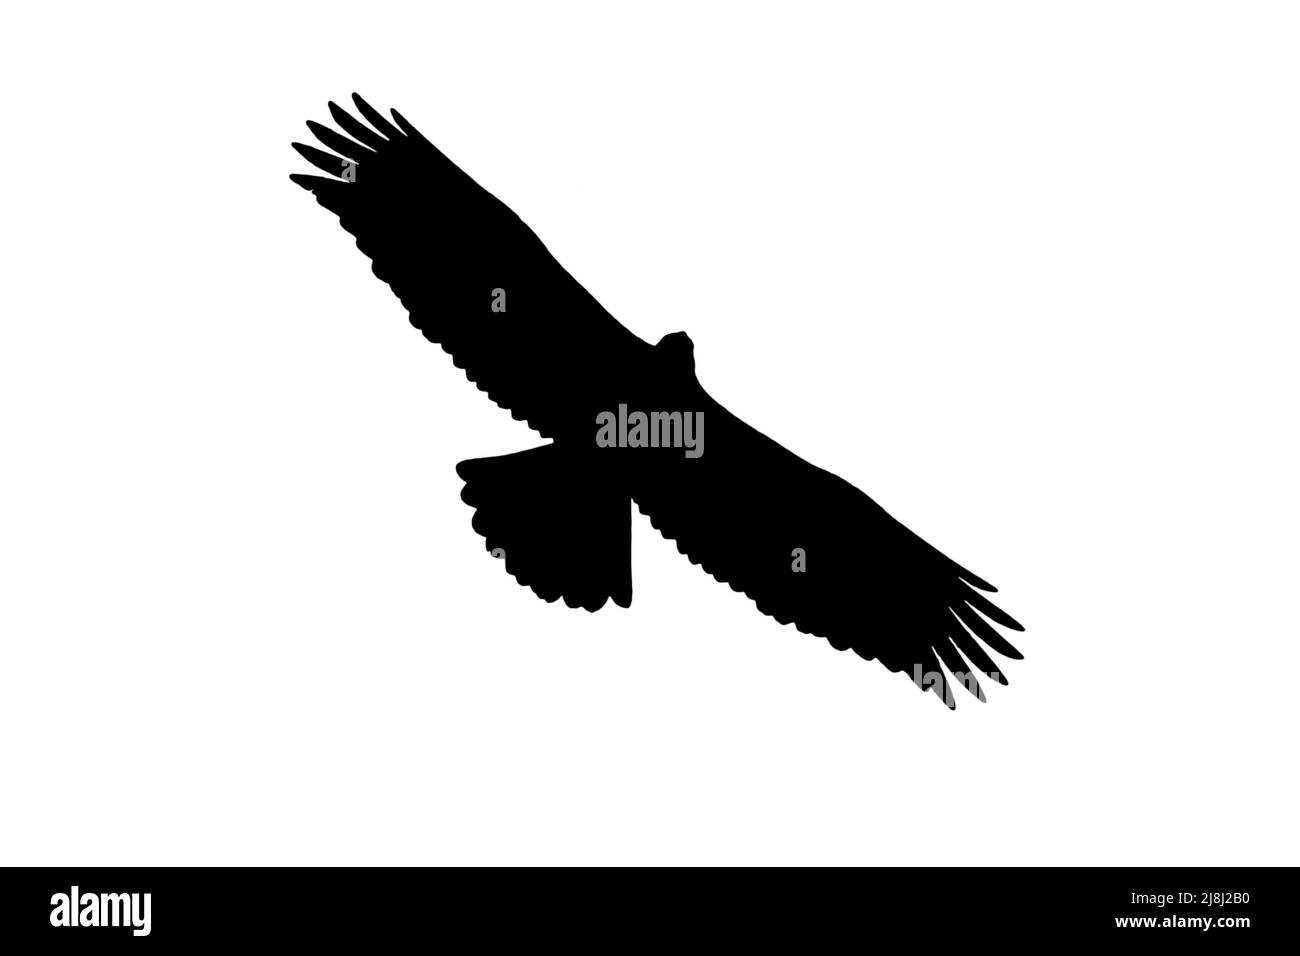 Silhouette de jeune aigle doré européen (Aquila chrysaetos) en vol, entourée d'un fond blanc pour montrer les formes des ailes, de la tête et de la queue Banque D'Images